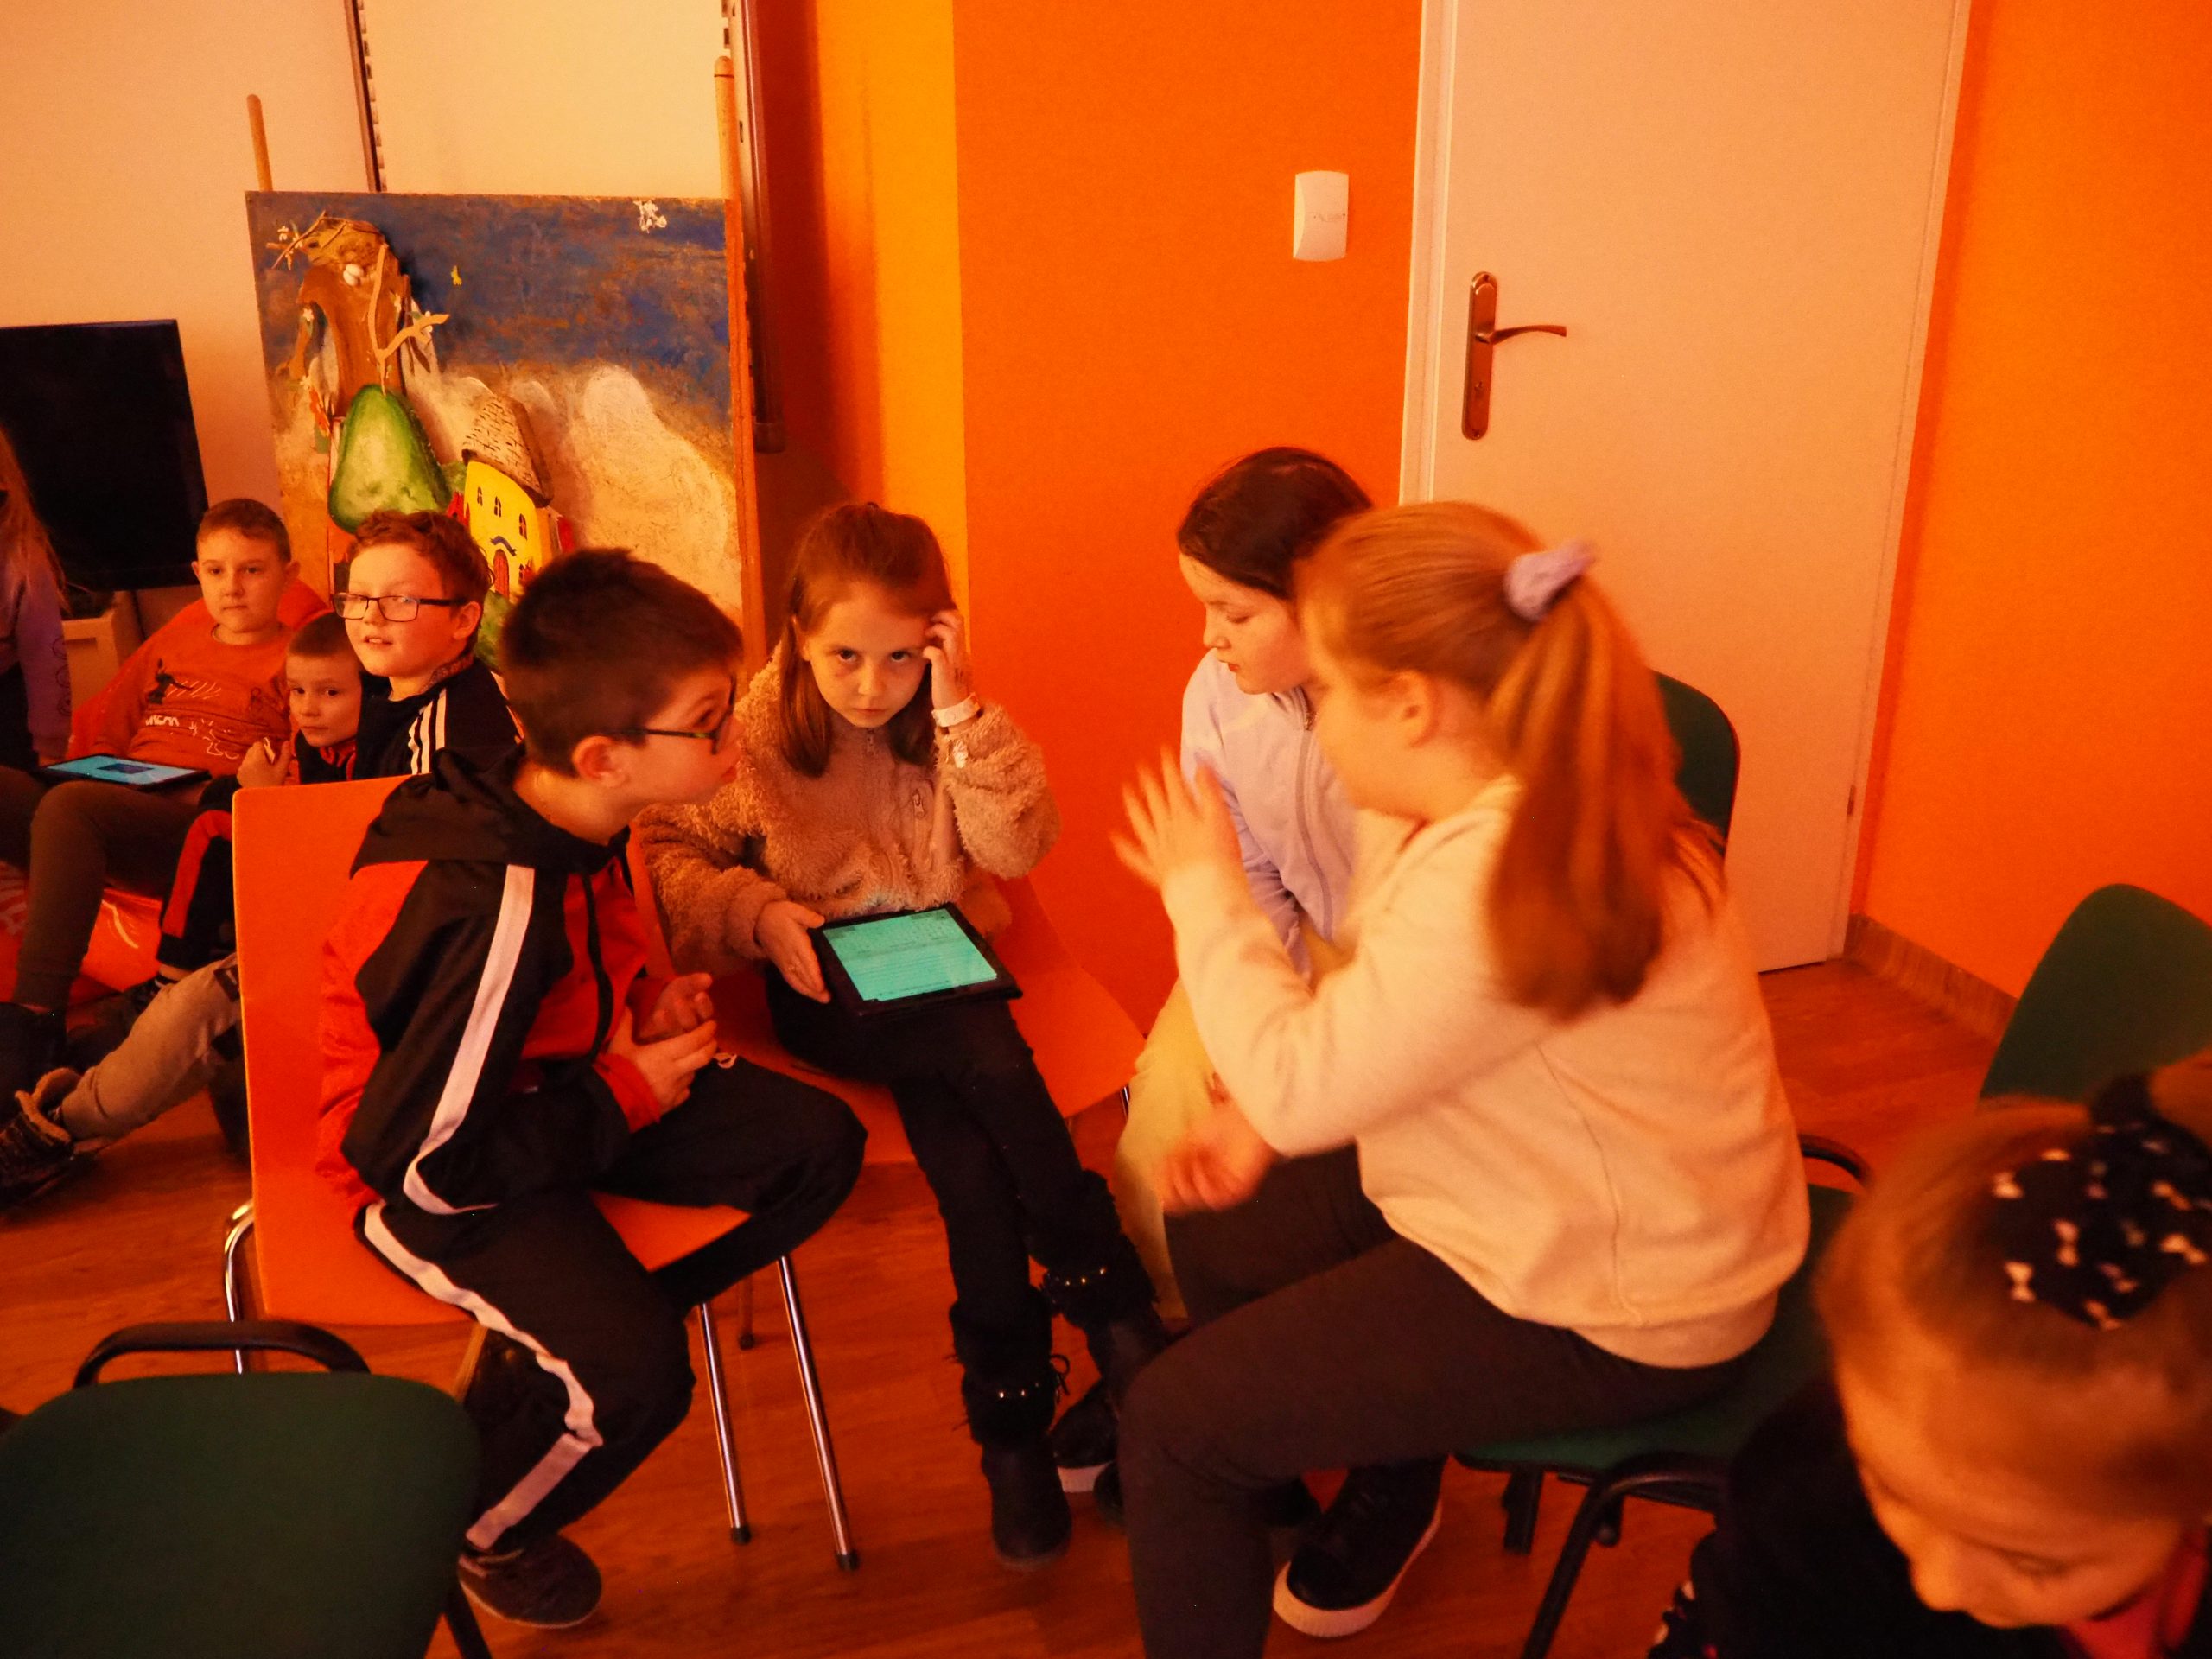 grupka dzieci w pracowni orange na tle pomarańczowej ściany korzysta z tabletu podczas zajęć edukacyjnych